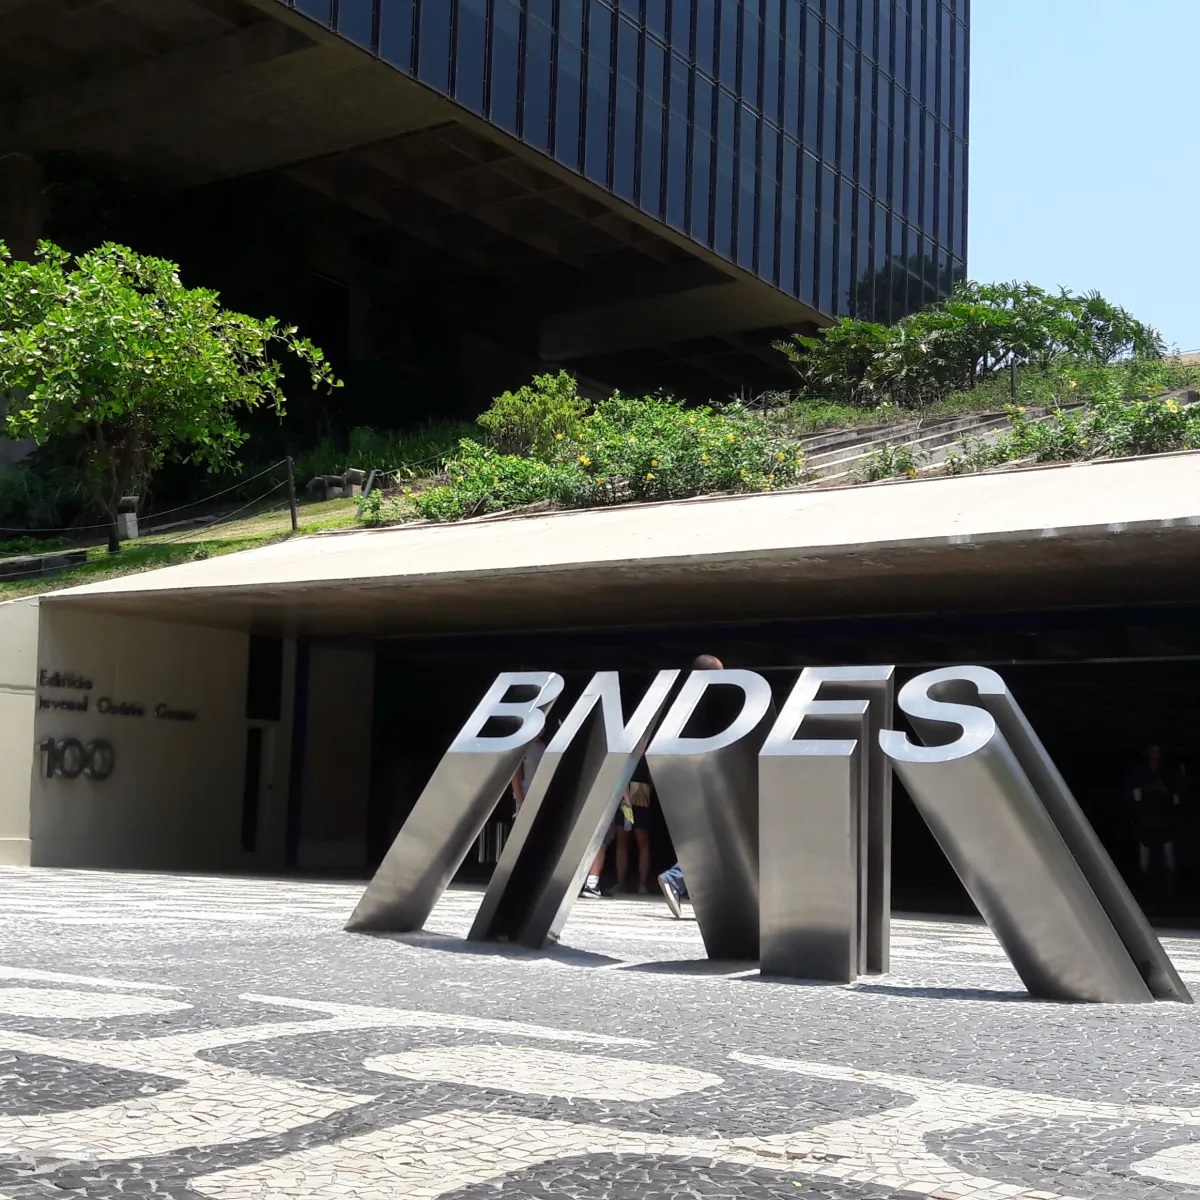 BNDES: SAIU edital com 900 vagas e salários de R$ 20 MIL